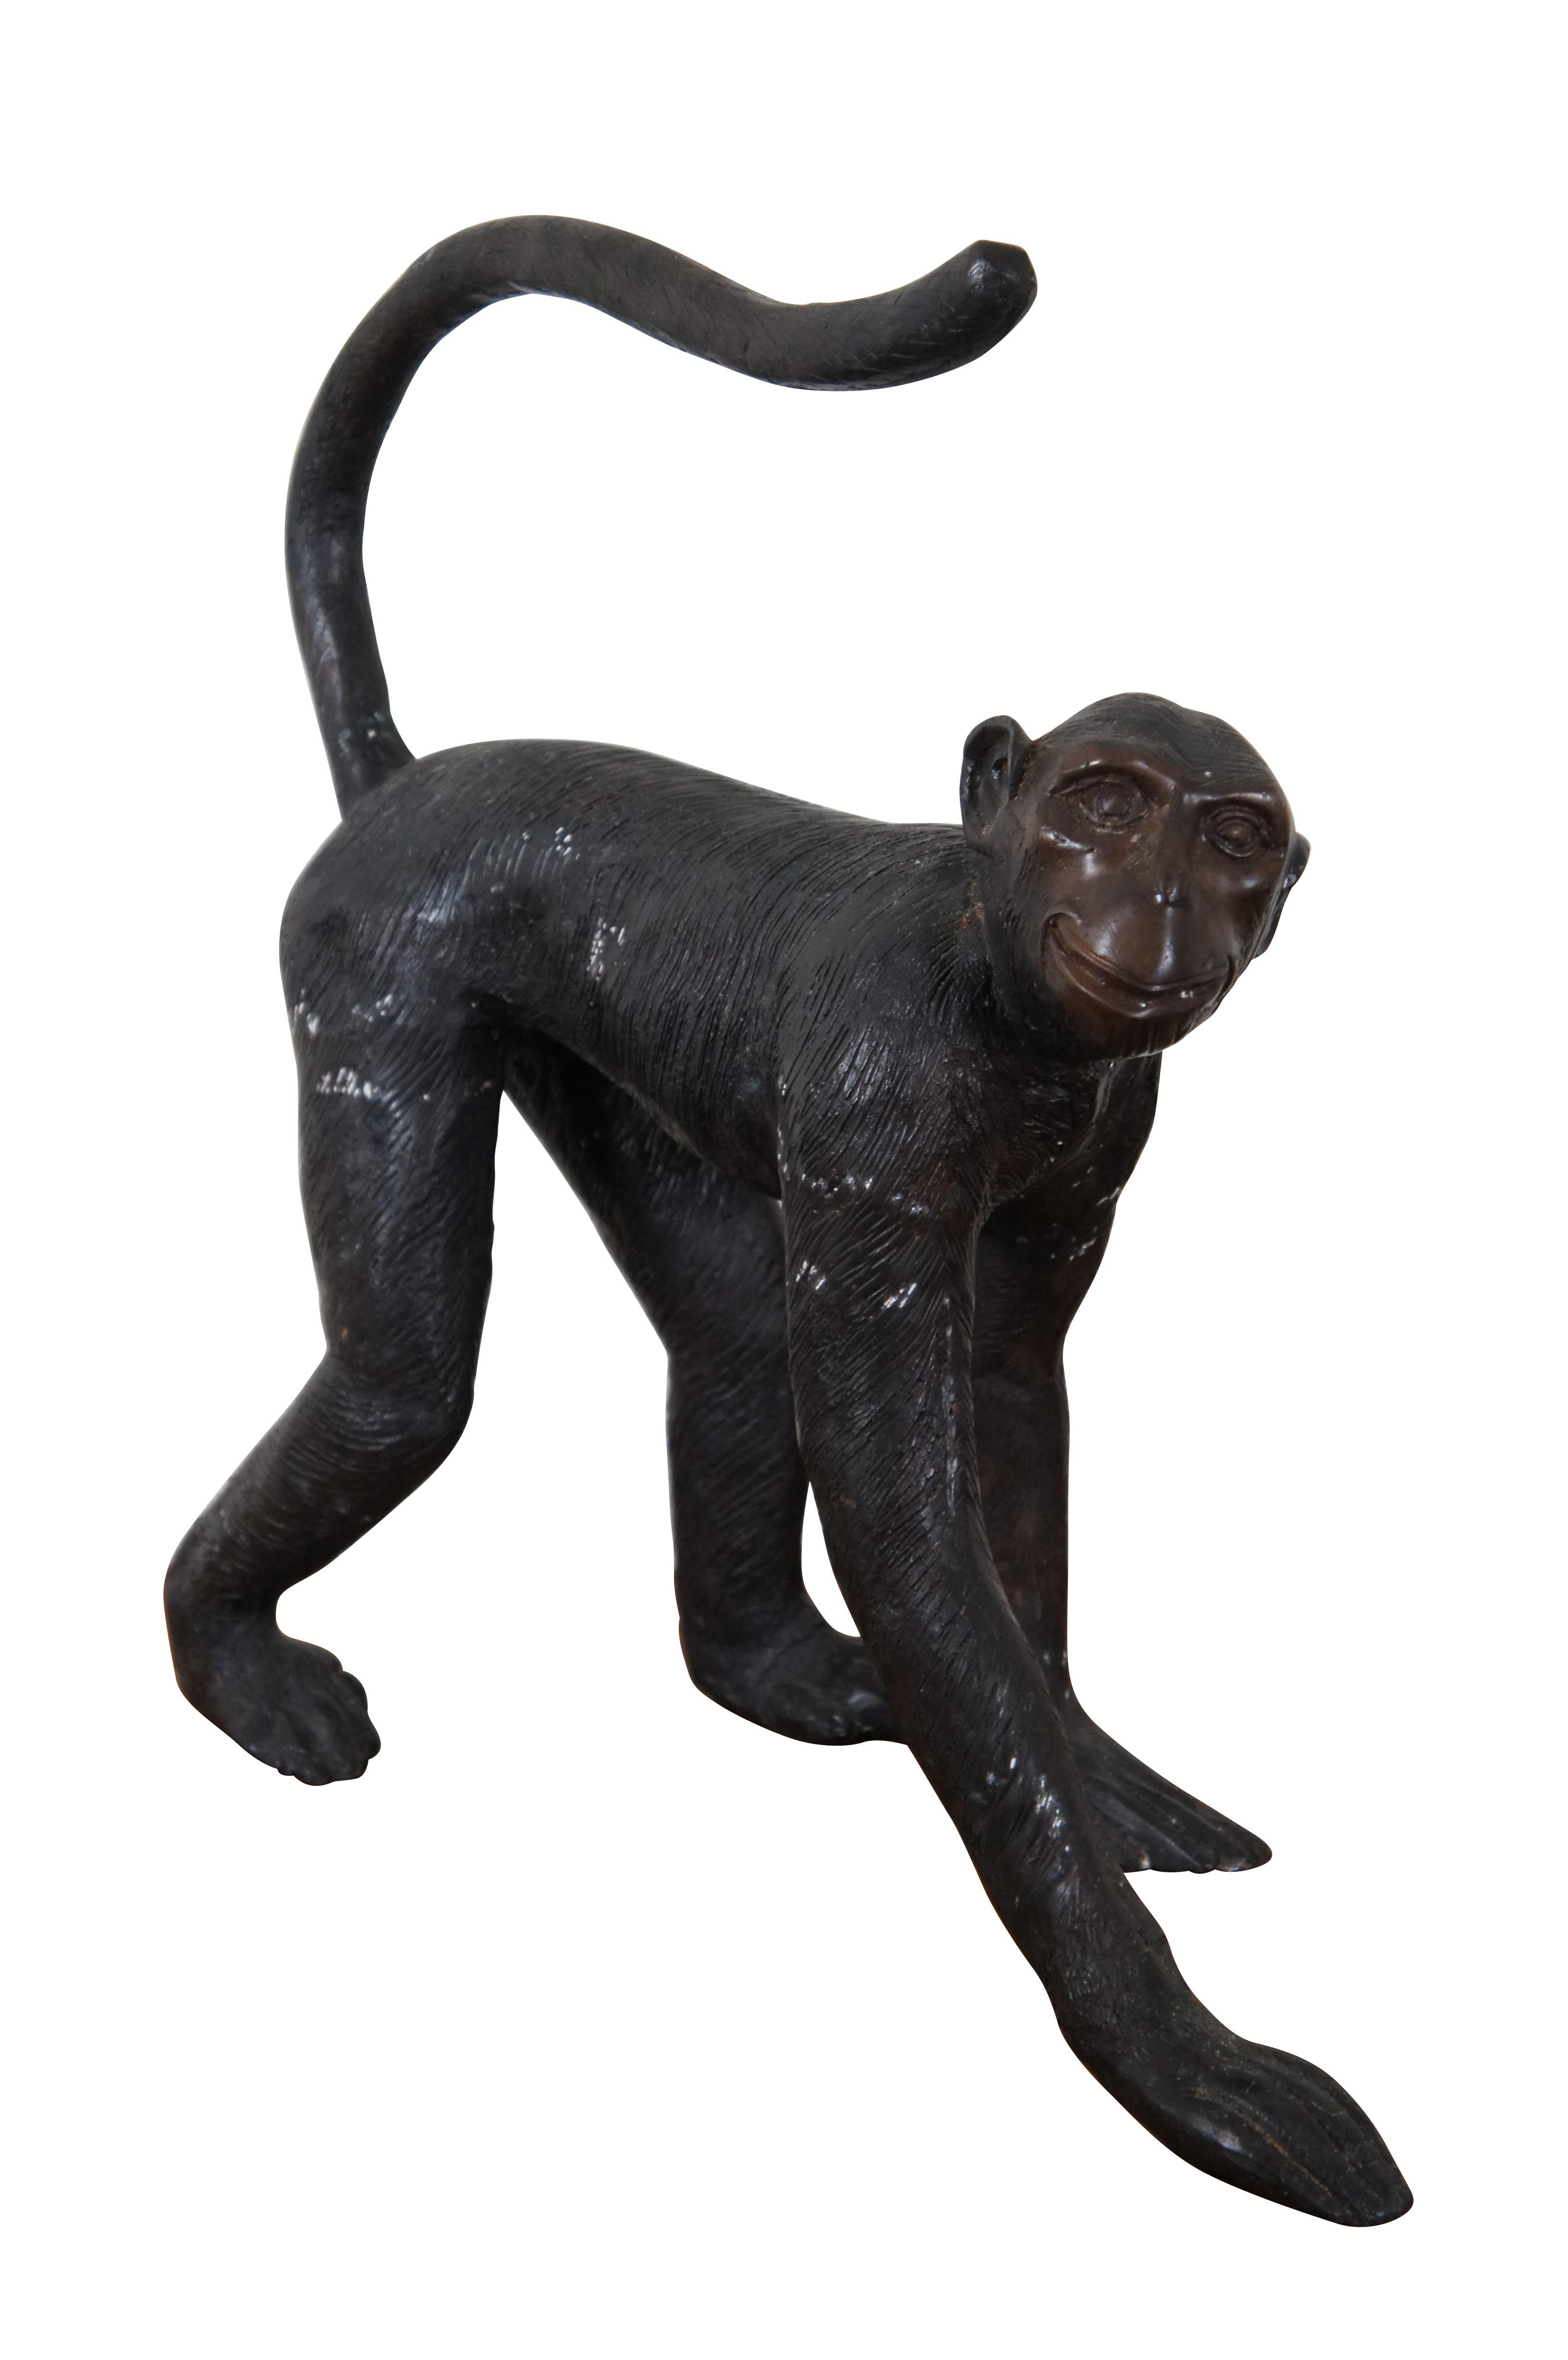 Grande sculpture ou statue vintage en bronze de Maitland Smith représentant un singe heureux marchant à quatre pattes, la queue relevée sur le dos.  Utilisé comme porte-papier hygiénique.

Dimensions :
20,5